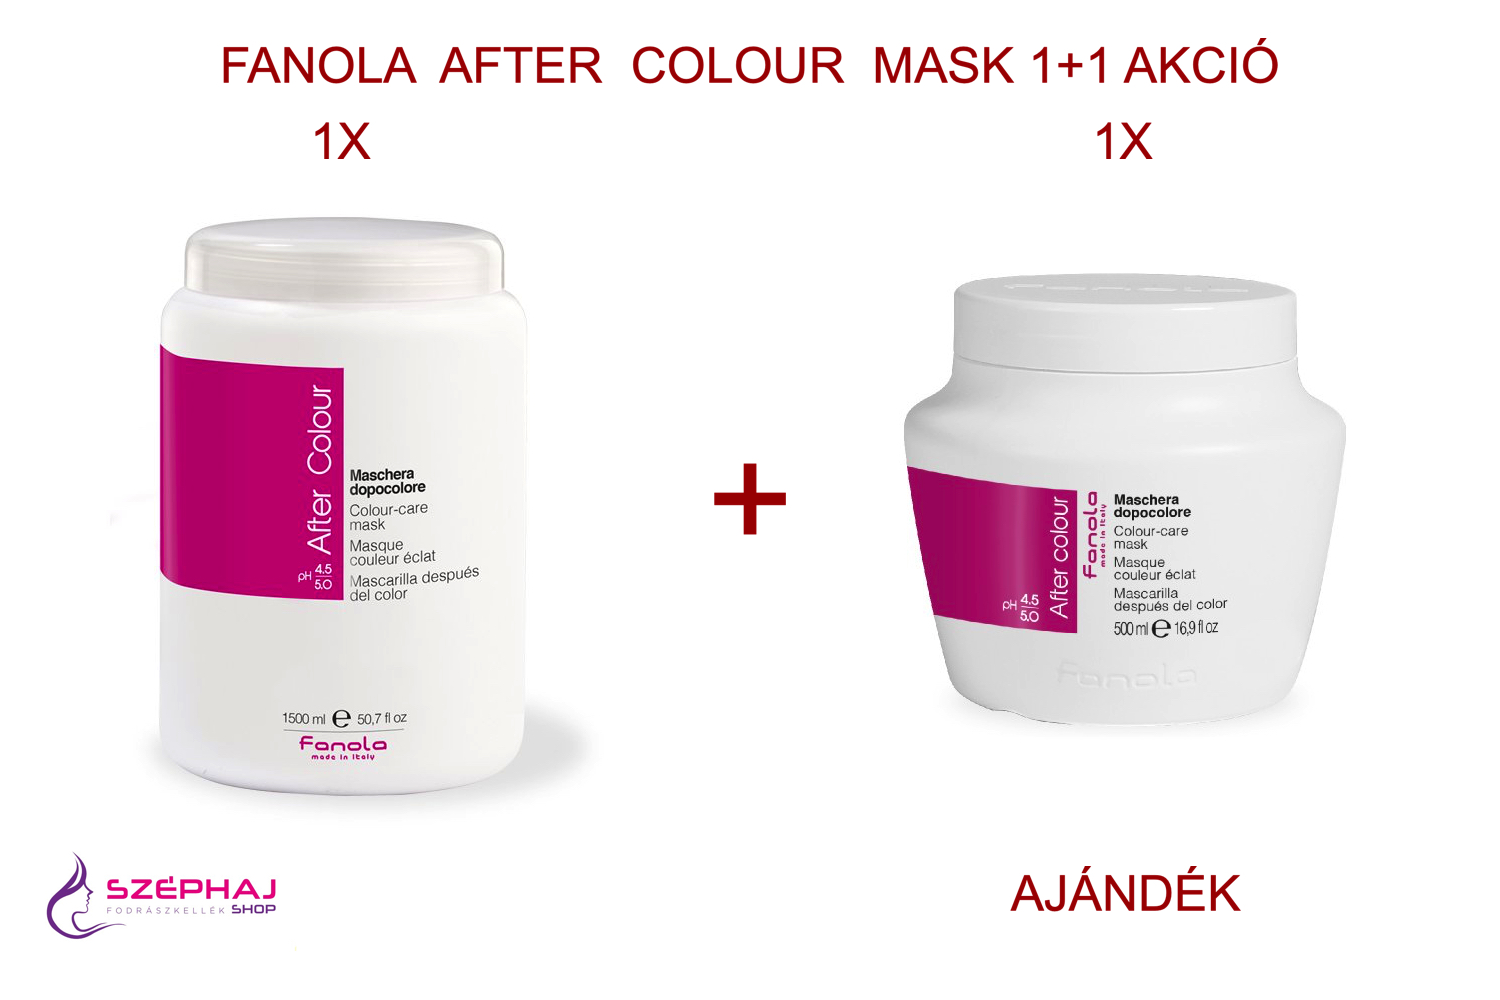 FANOLA After Colour Mask 1500ml 1+1 AKCIÓ